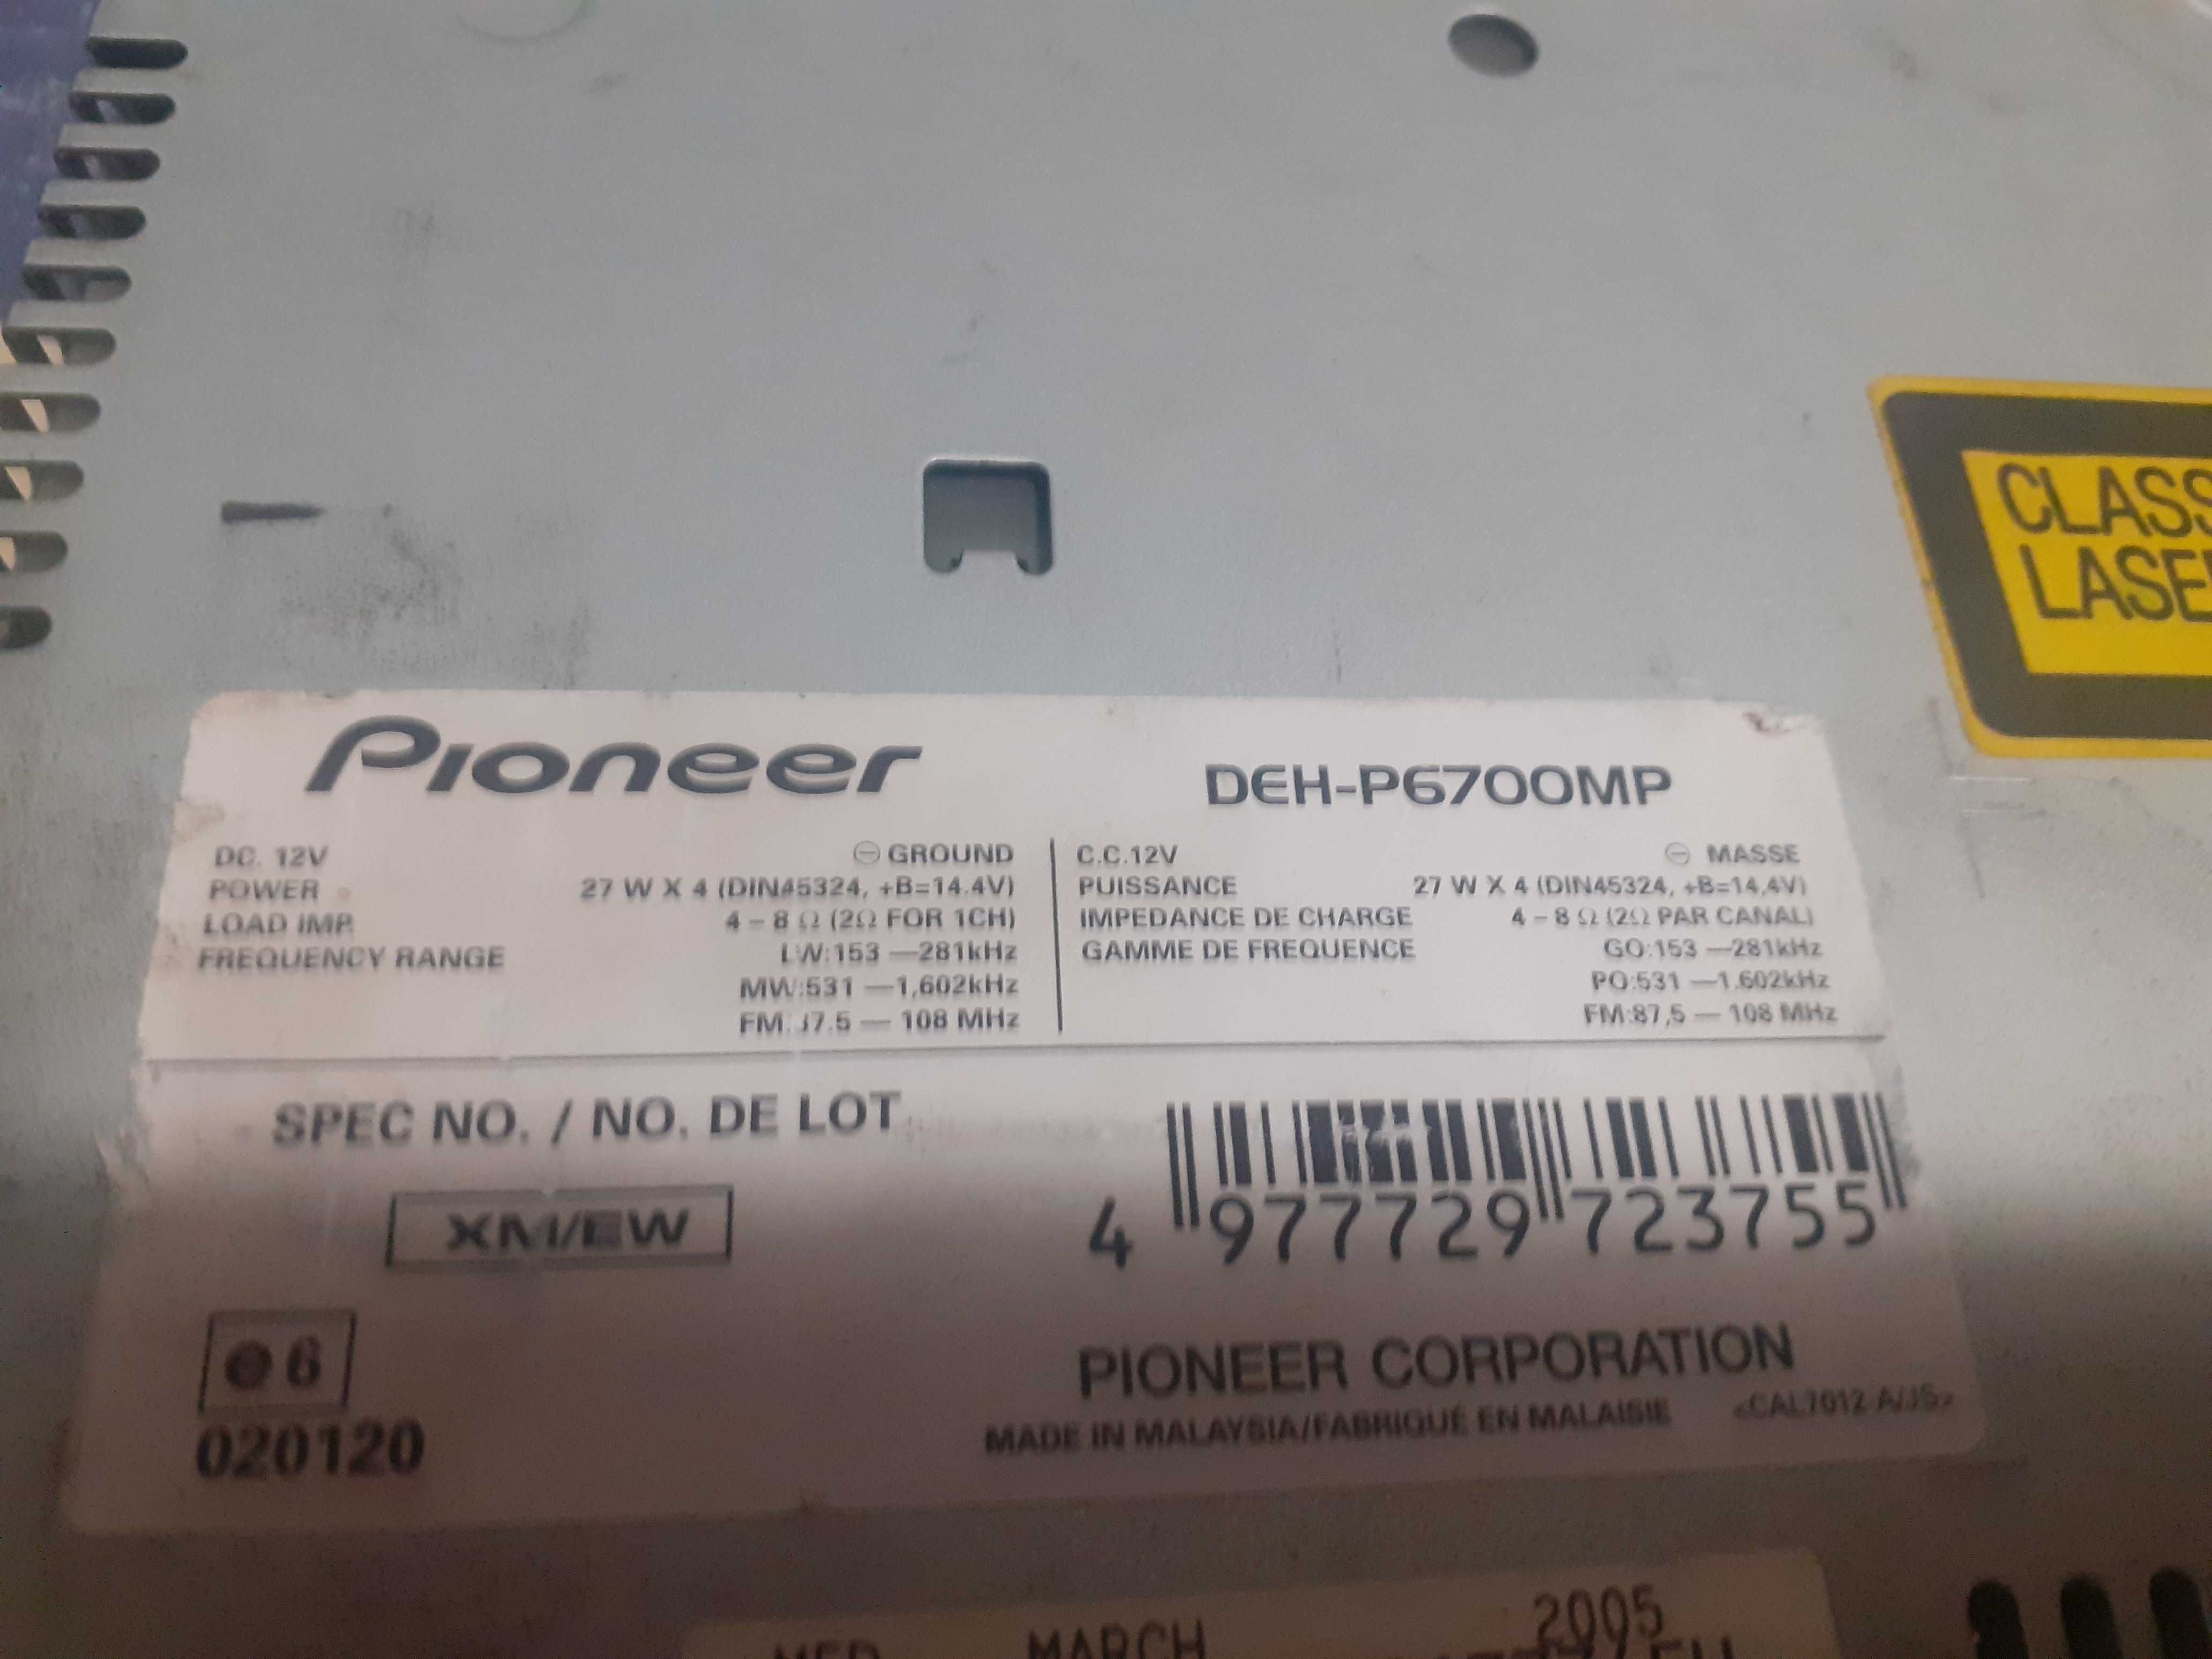 Pioneer deh p7000r